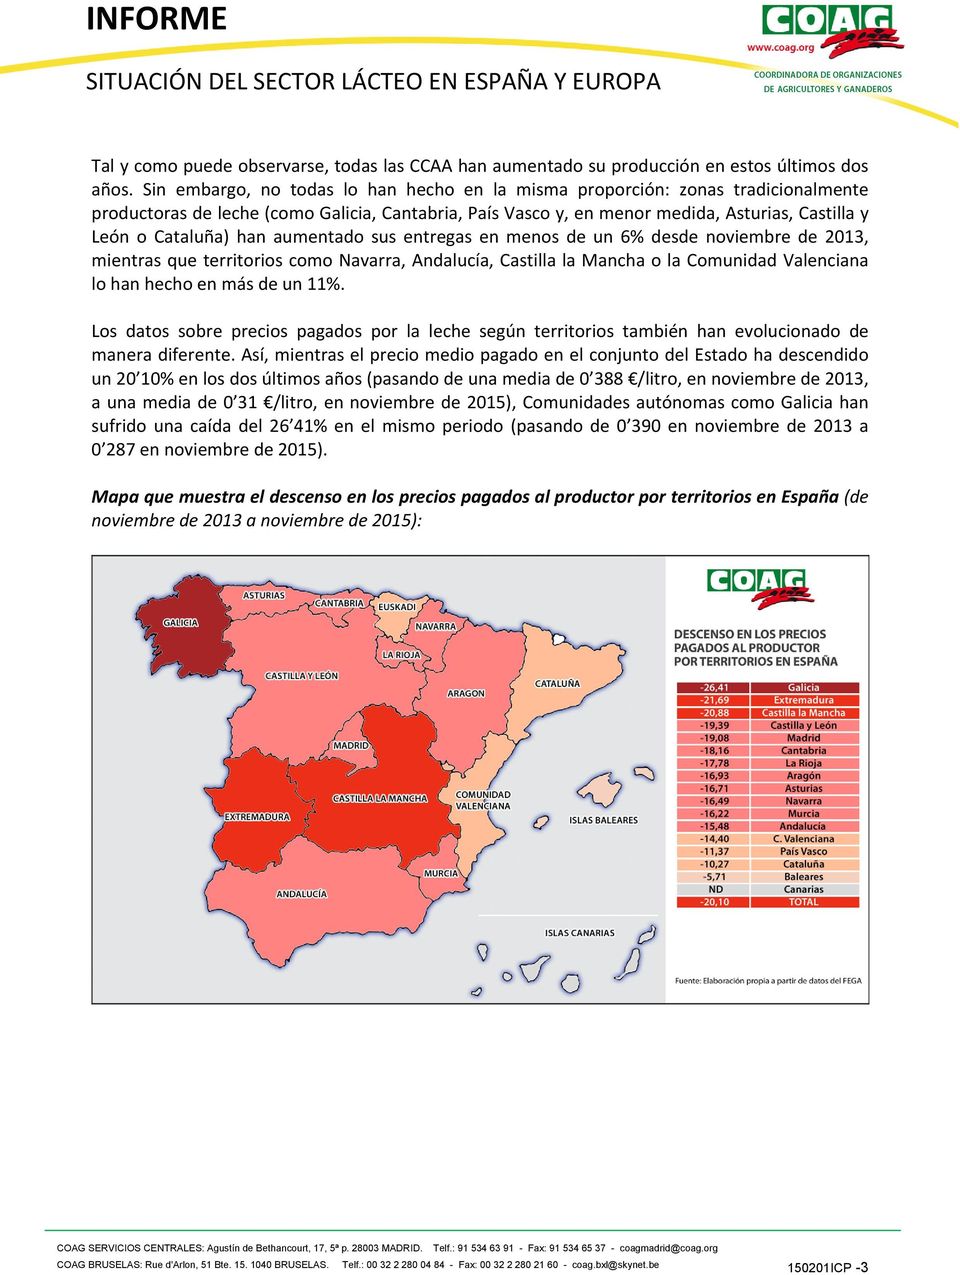 han aumentado sus entregas en menos de un 6% desde noviembre de 2013, mientras que territorios como Navarra, Andalucía, Castilla la Mancha o la Comunidad Valenciana lo han hecho en más de un 11%.